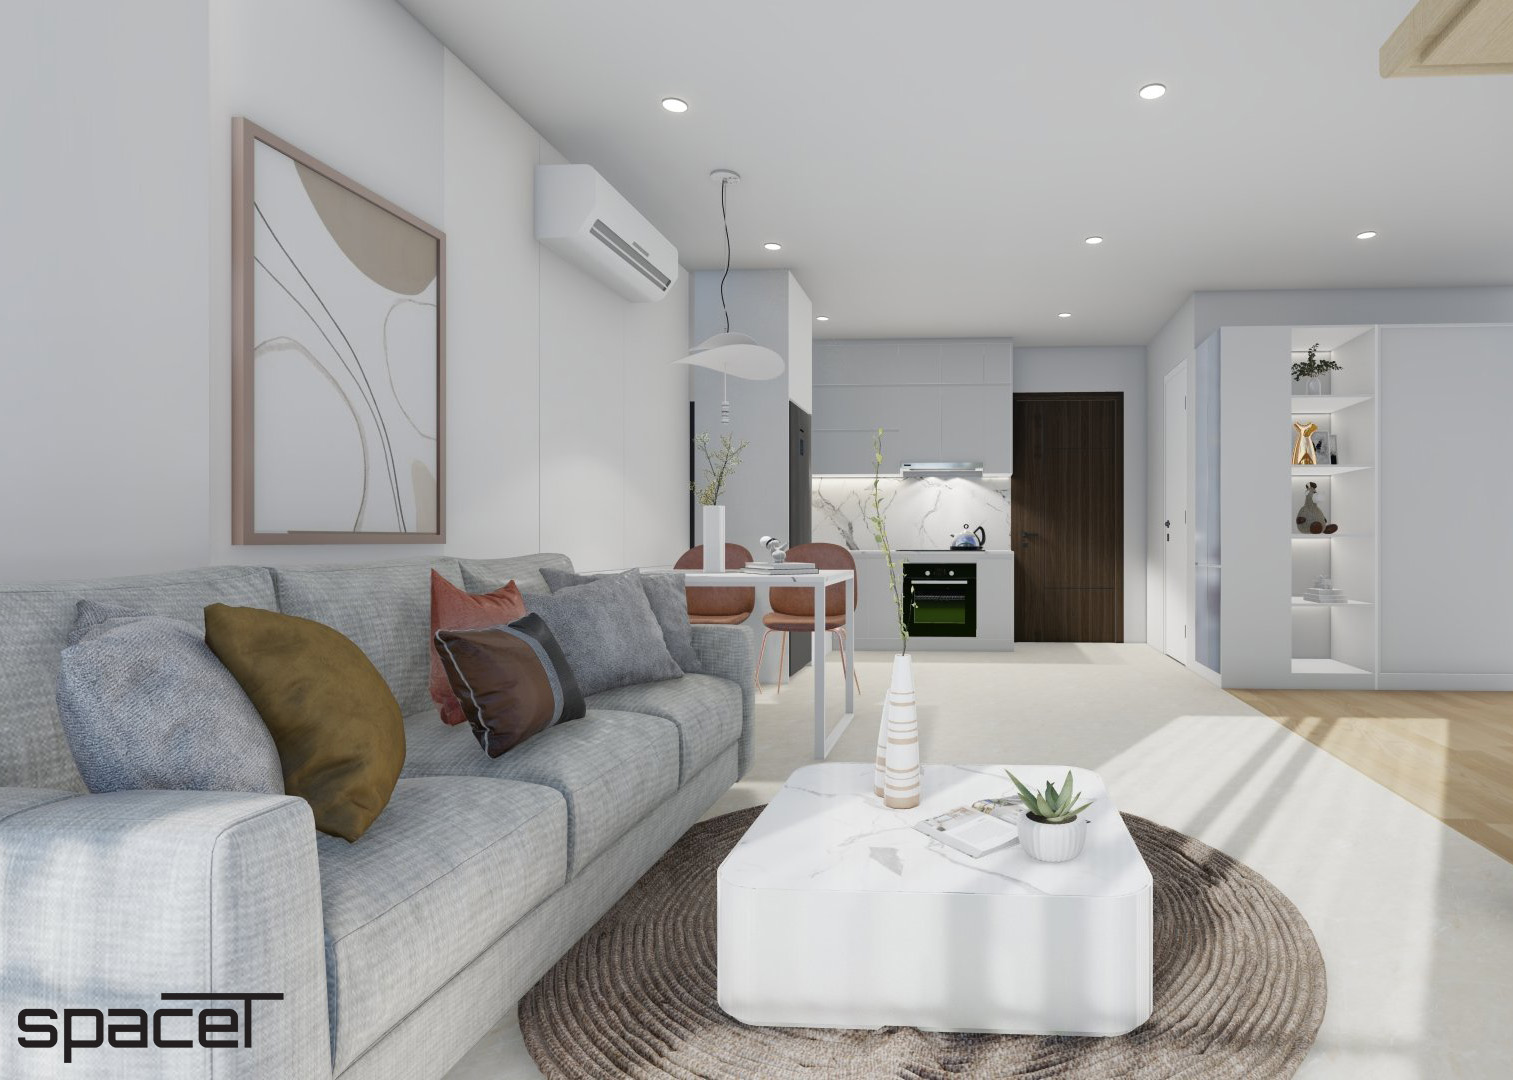 Phòng khách, phong cách Tối giản Minimalist, thiết kế concept nội thất, căn hộ The Origami Vinhomes Quận 9